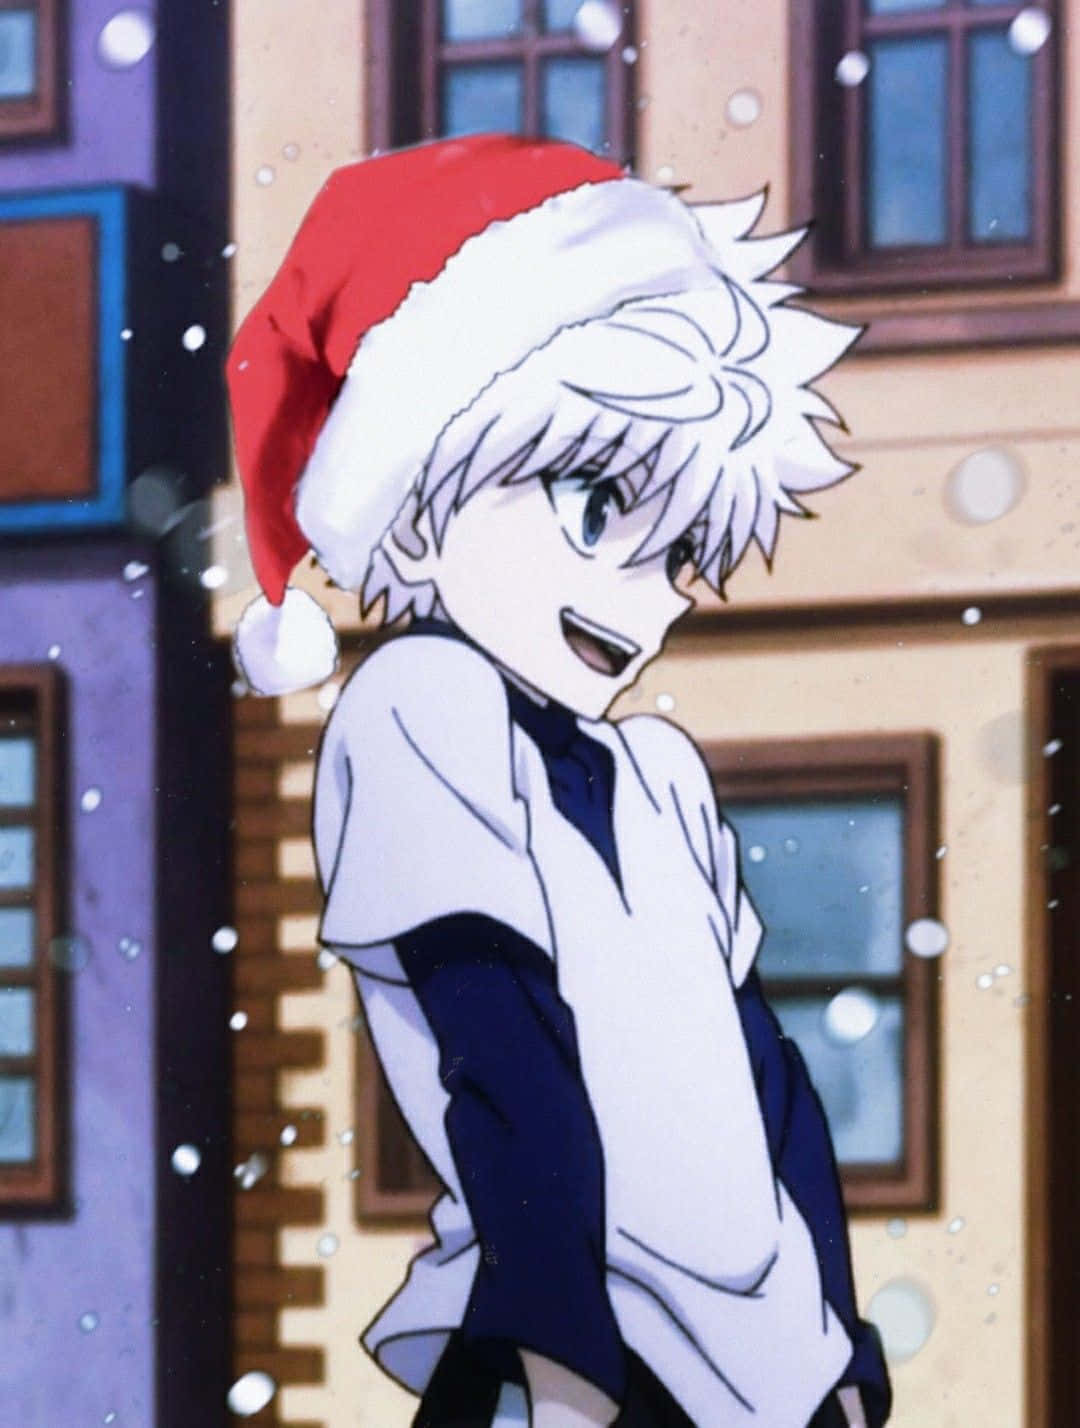 Zweijungen Verkleiden Sich Als Weihnachtsmann Und Wichtel In Einer Gemütlichen Weihnachts-anime-szene. Wallpaper